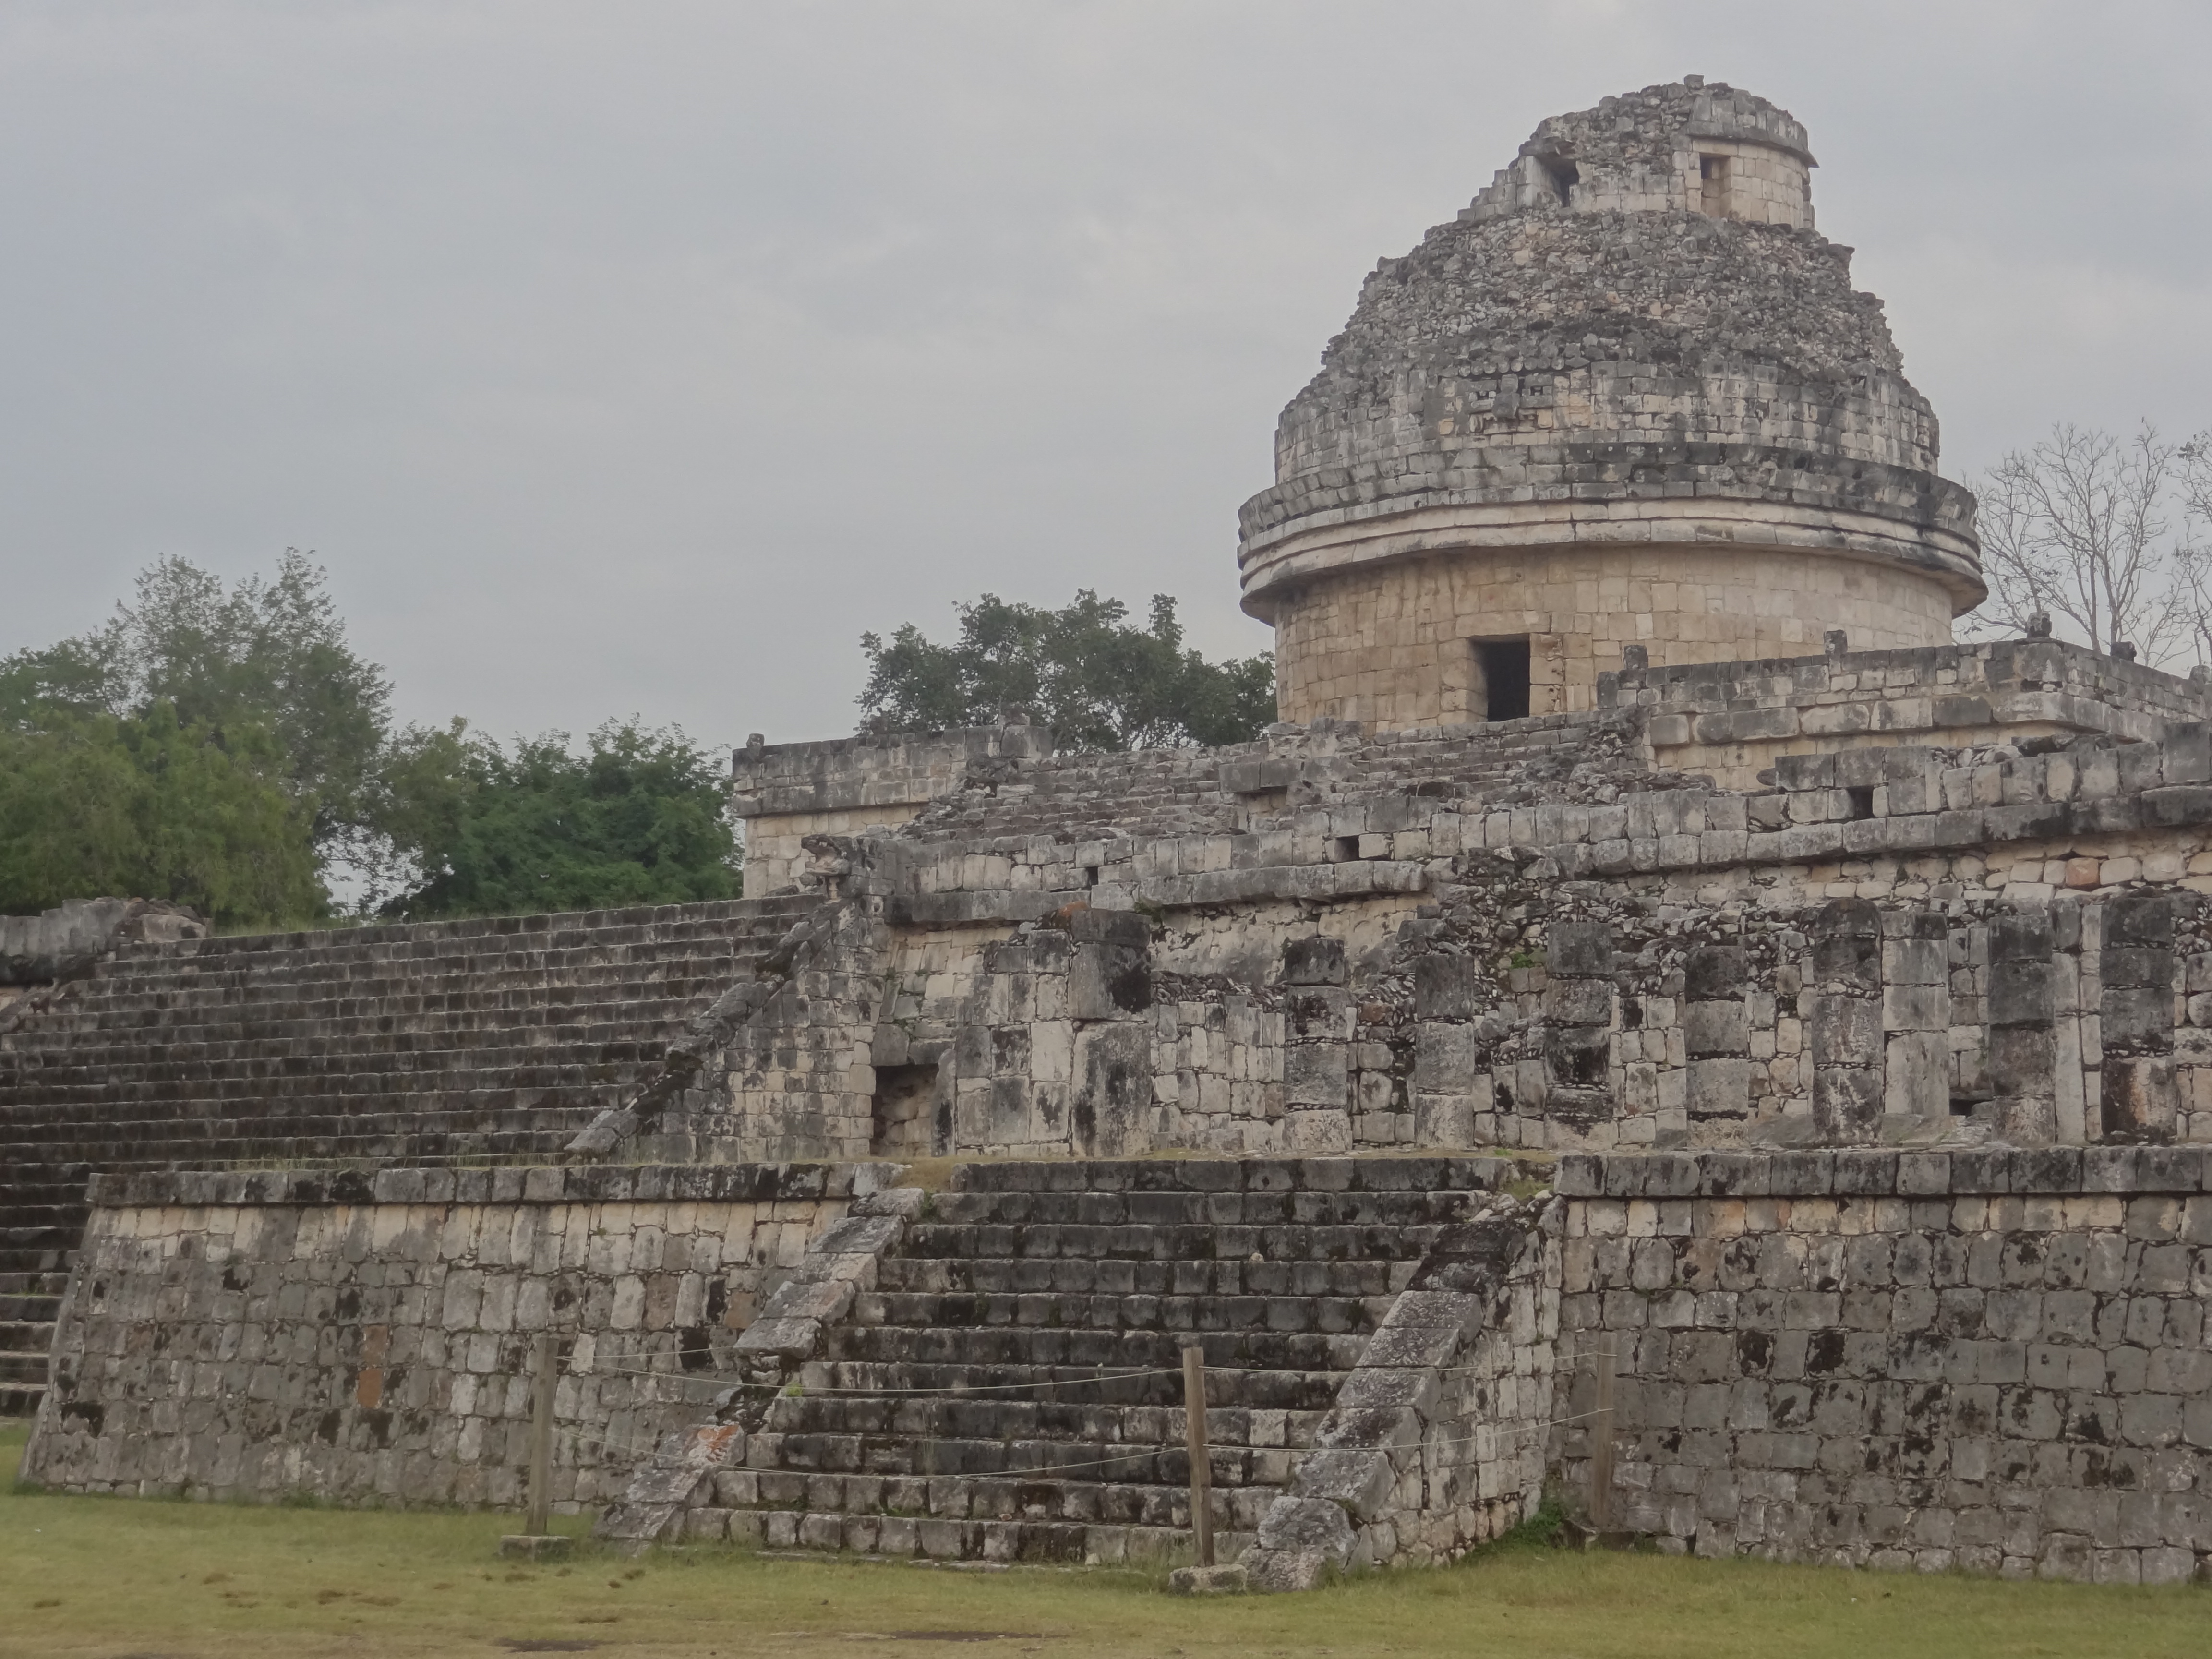 Les mayas avaient construits un impressionnant observatoire à Chichen Itza au Mexique photo blog voyage tour du monde https://yoytourdumonde.fr